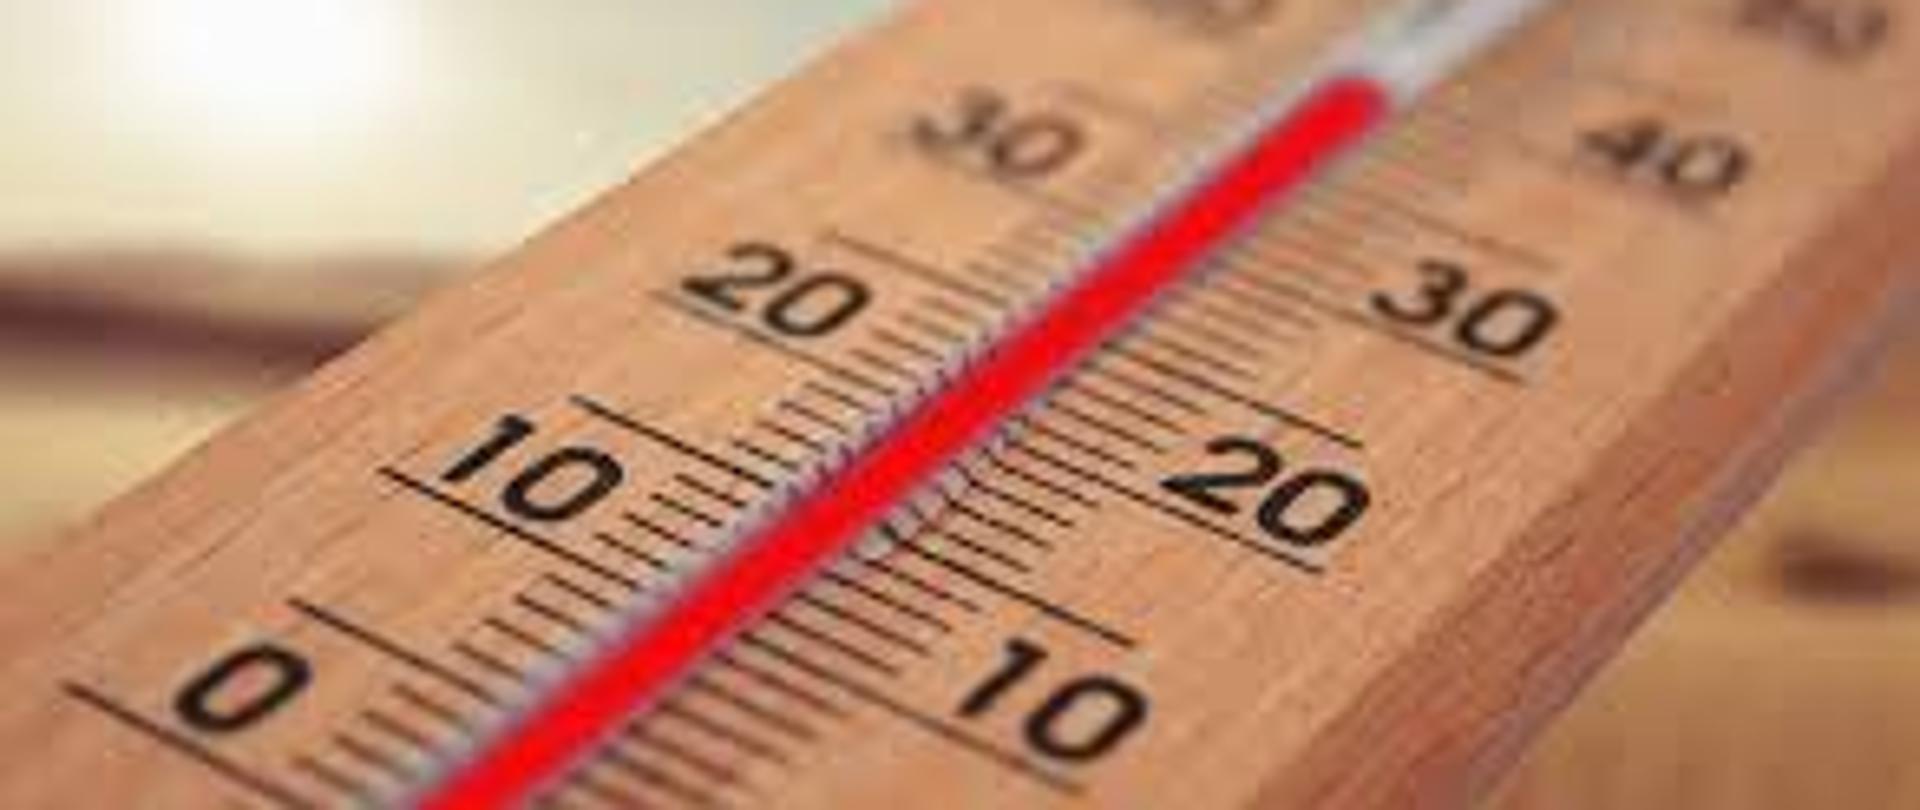 drewniany termometr wskazujący wysoką temperaturę